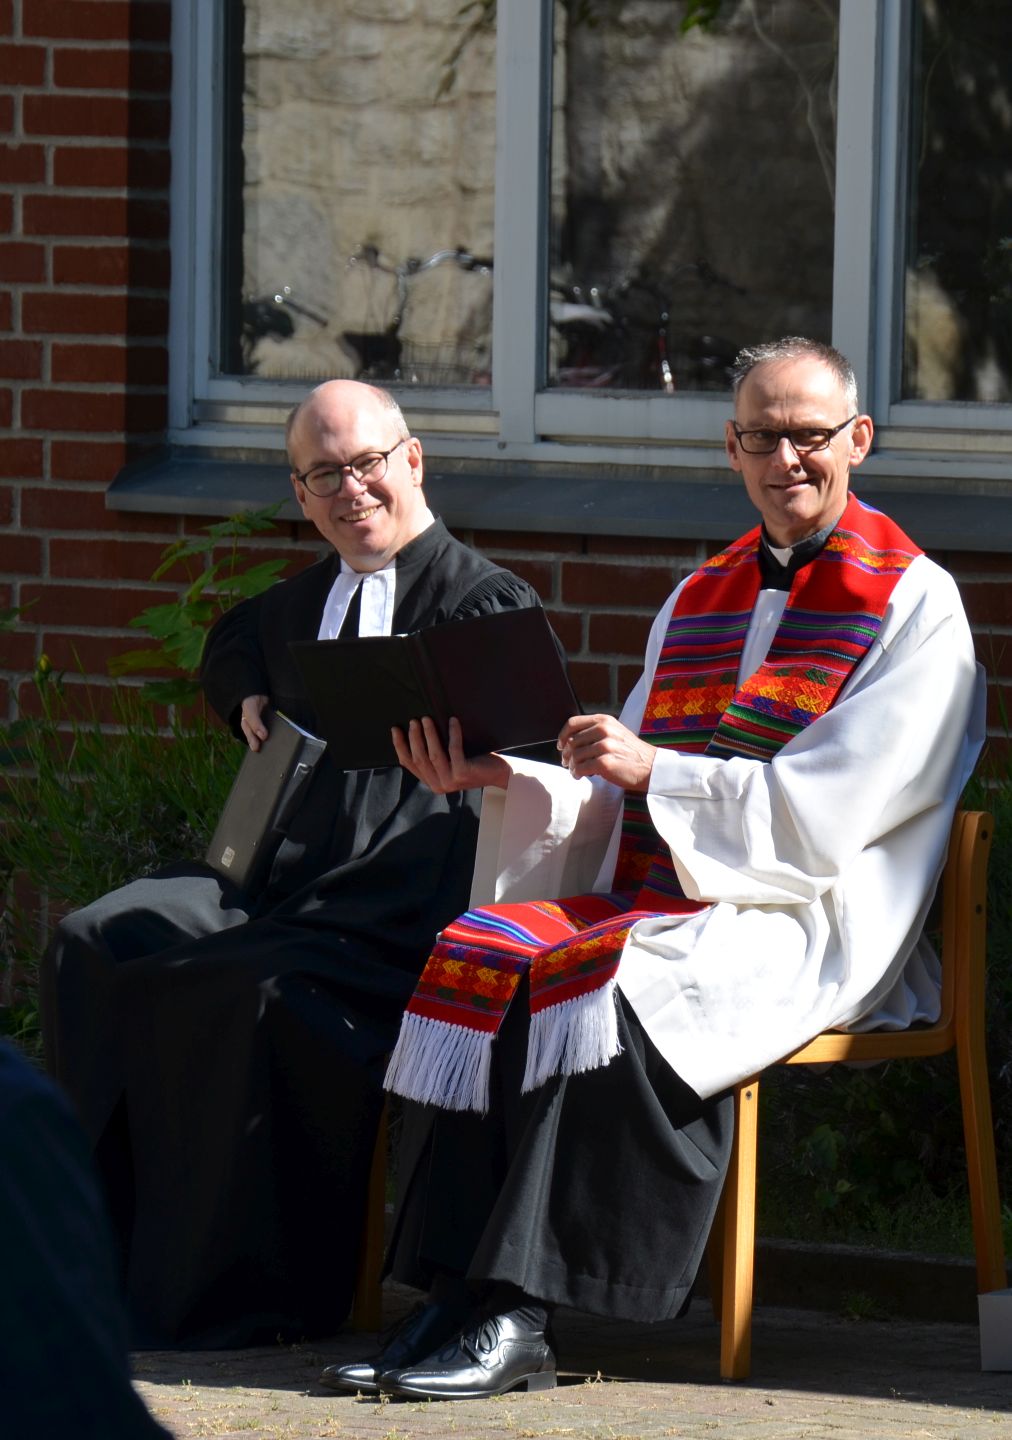 Pfarrer Volkwein und Pastor Borcholt in liturgischen Gewändern